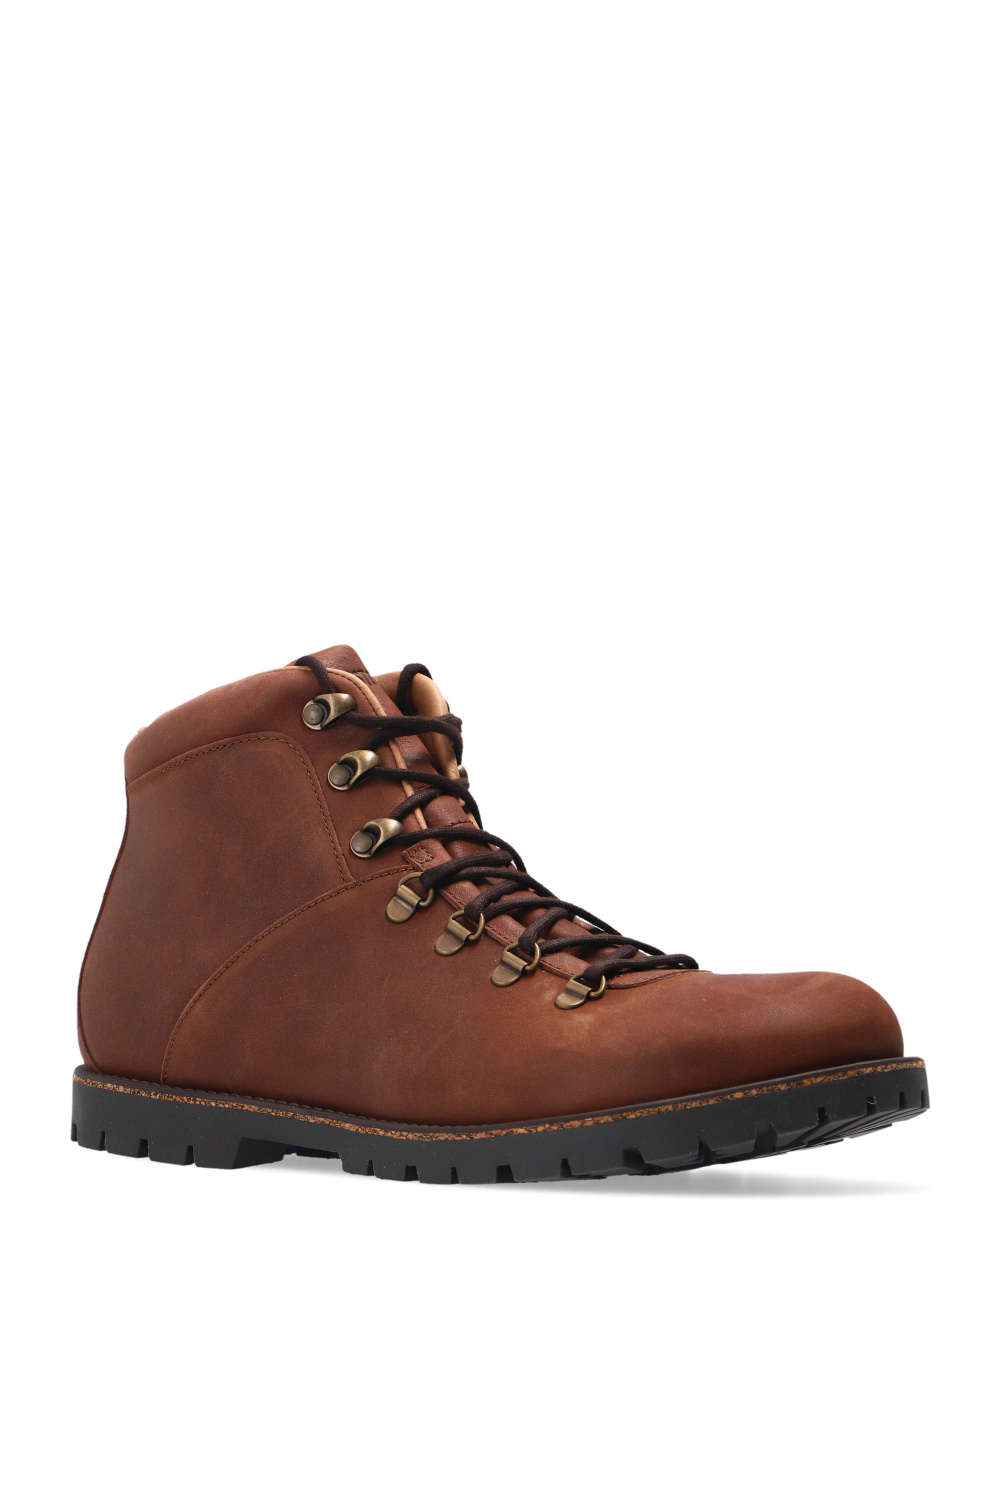 IetpShops Ukraine - 'Jackson' leather boots Birkenstock - 46 schwarz rot AQ3771 994 Herren Sneaker Ltr